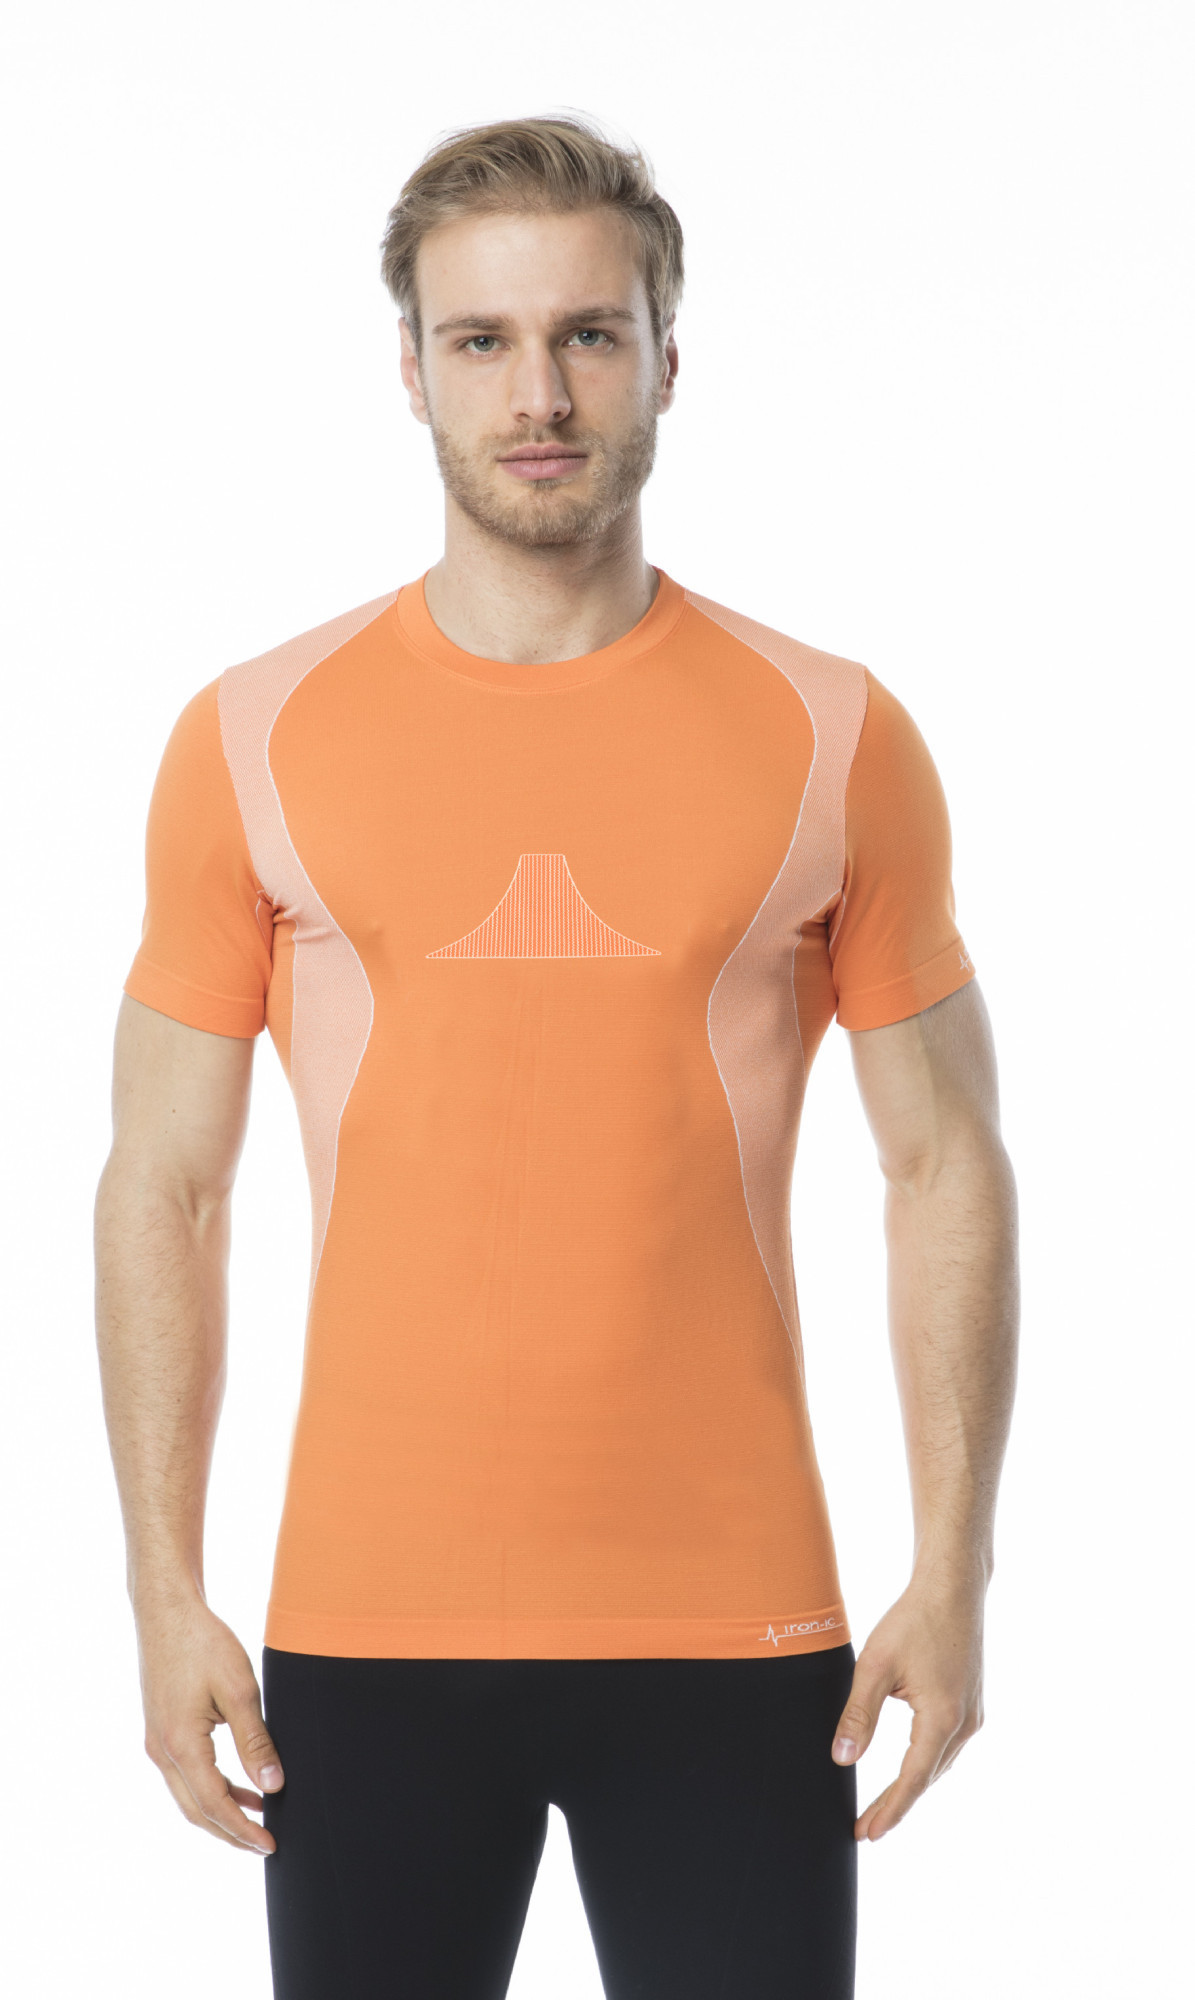 Pánské funkční tričko s krátkým rukávem IRON-IC - Follow the Genius - oranžová Barva: Oranžová, Velikost: S/M